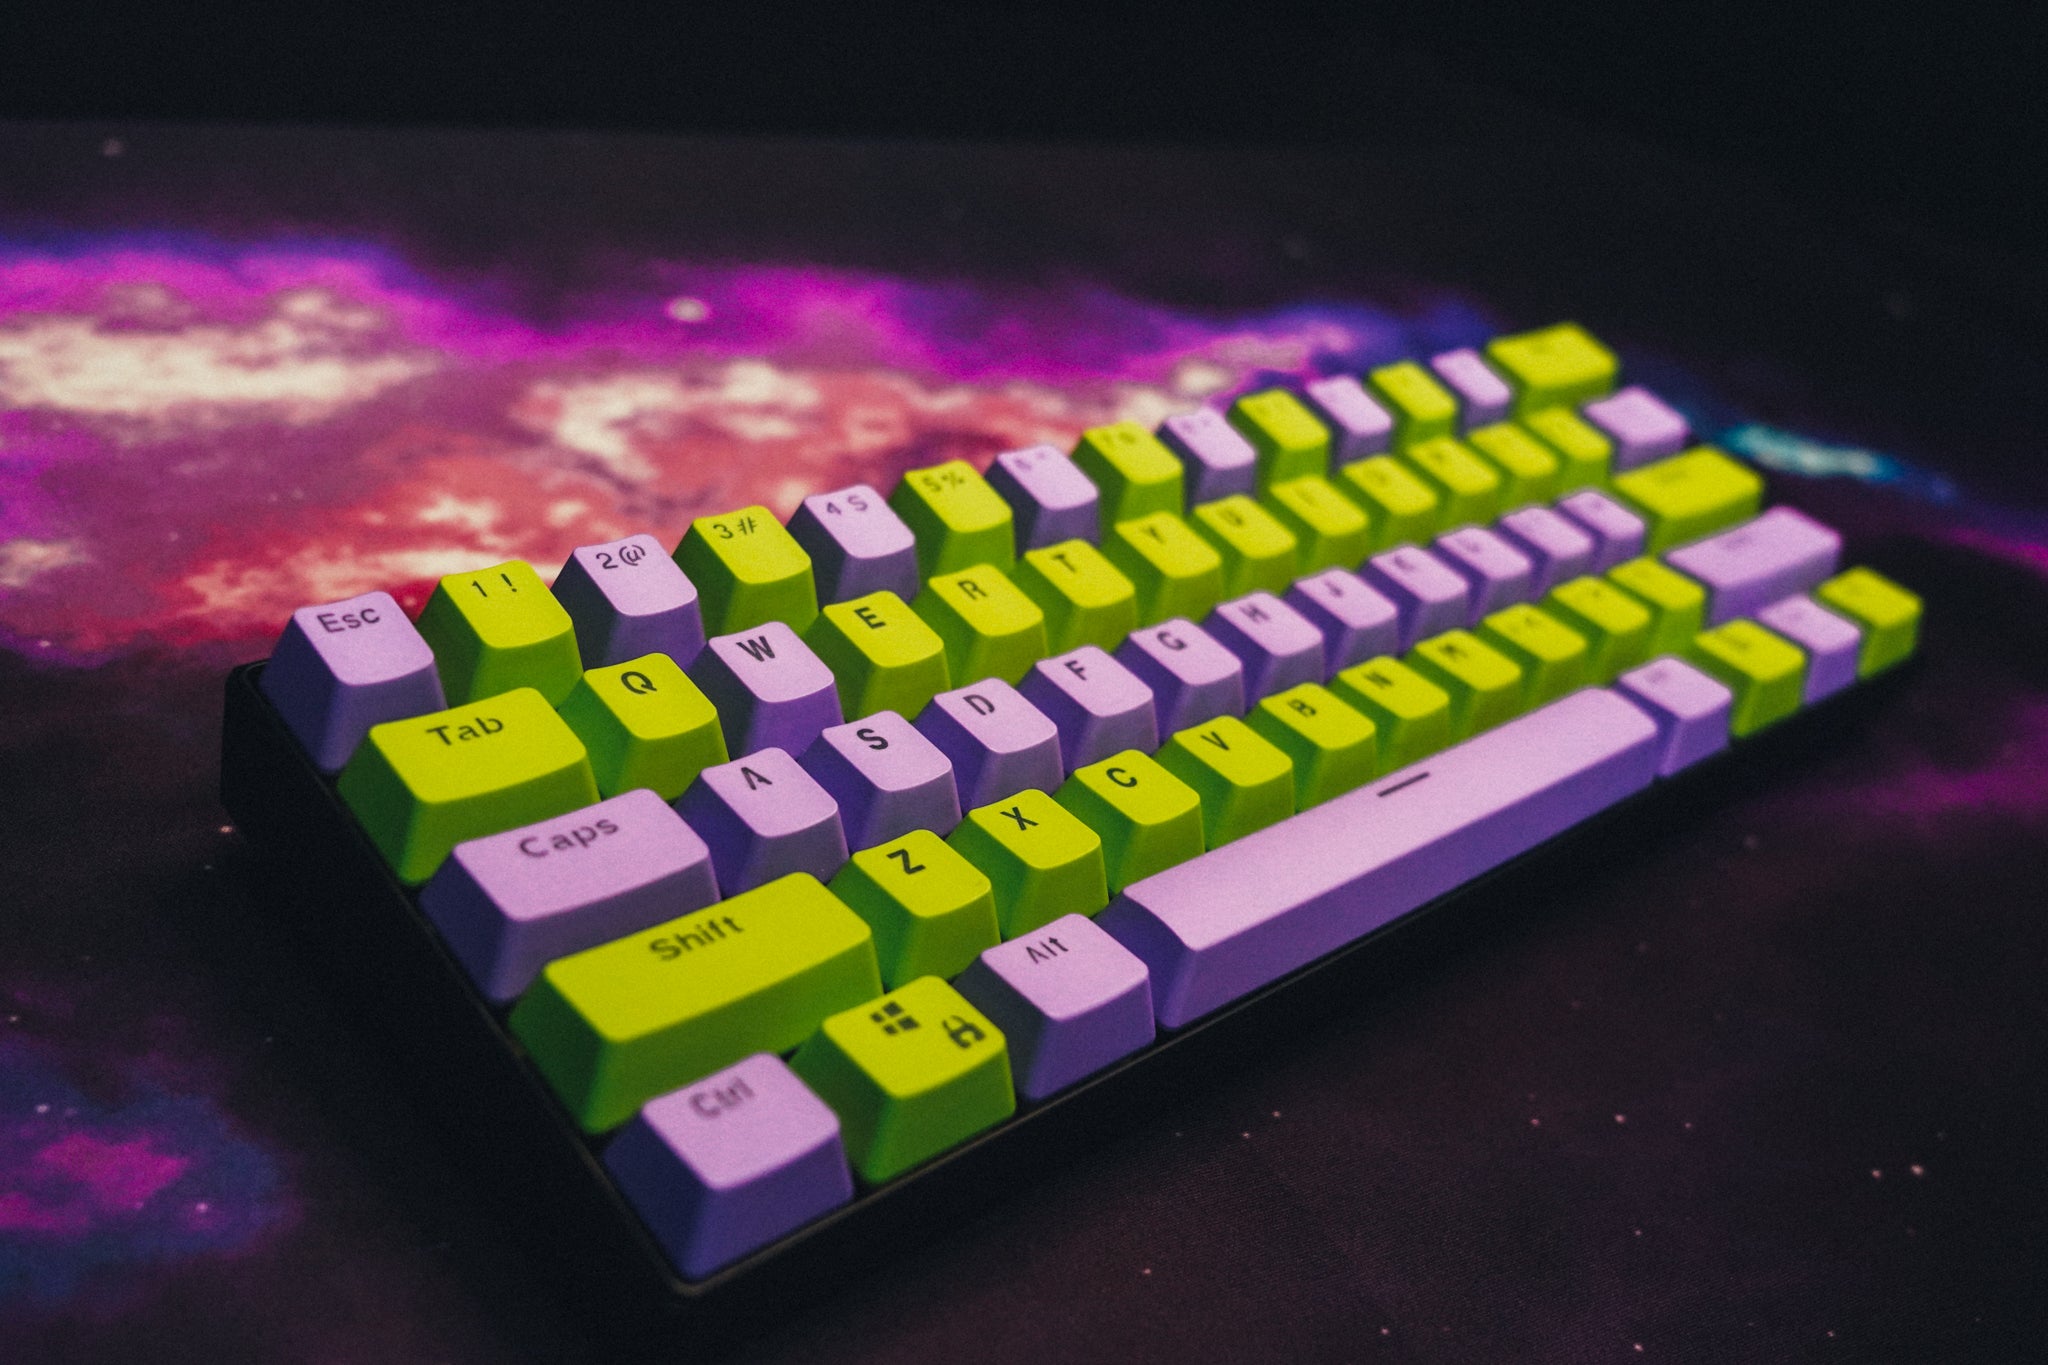 gamma - Gaming Keyboards